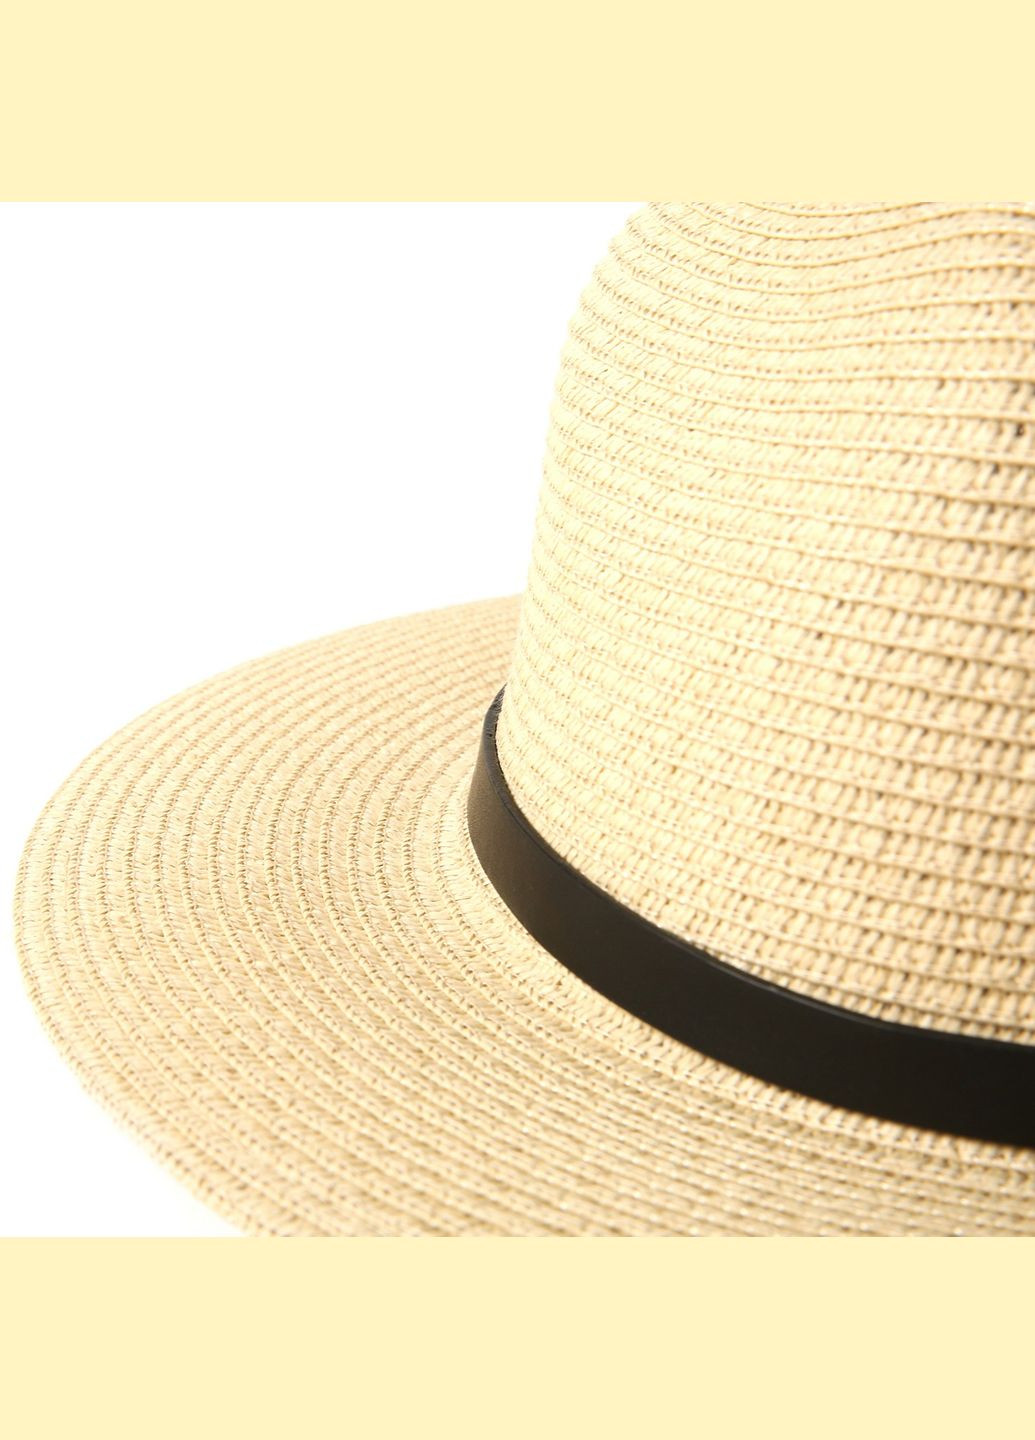 Шляпа федора мужская бумага бежевая BRIDGET 844-064 LuckyLOOK 844-064м (289358550)